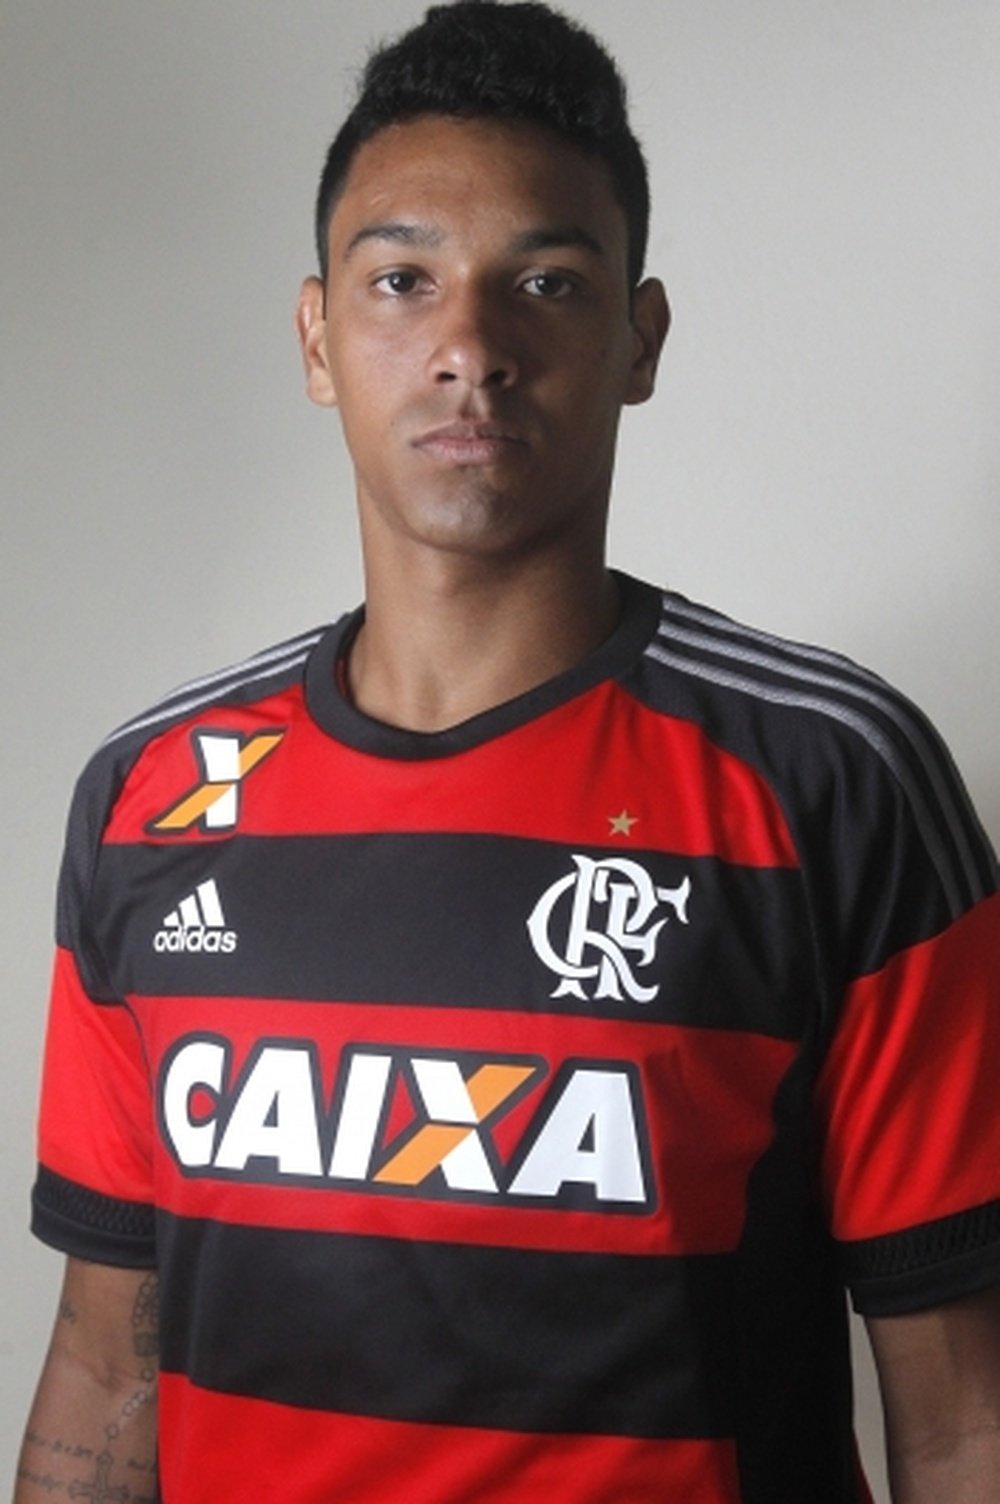 António Carlos ha termina su etapa en el Flamengo. Flamengo